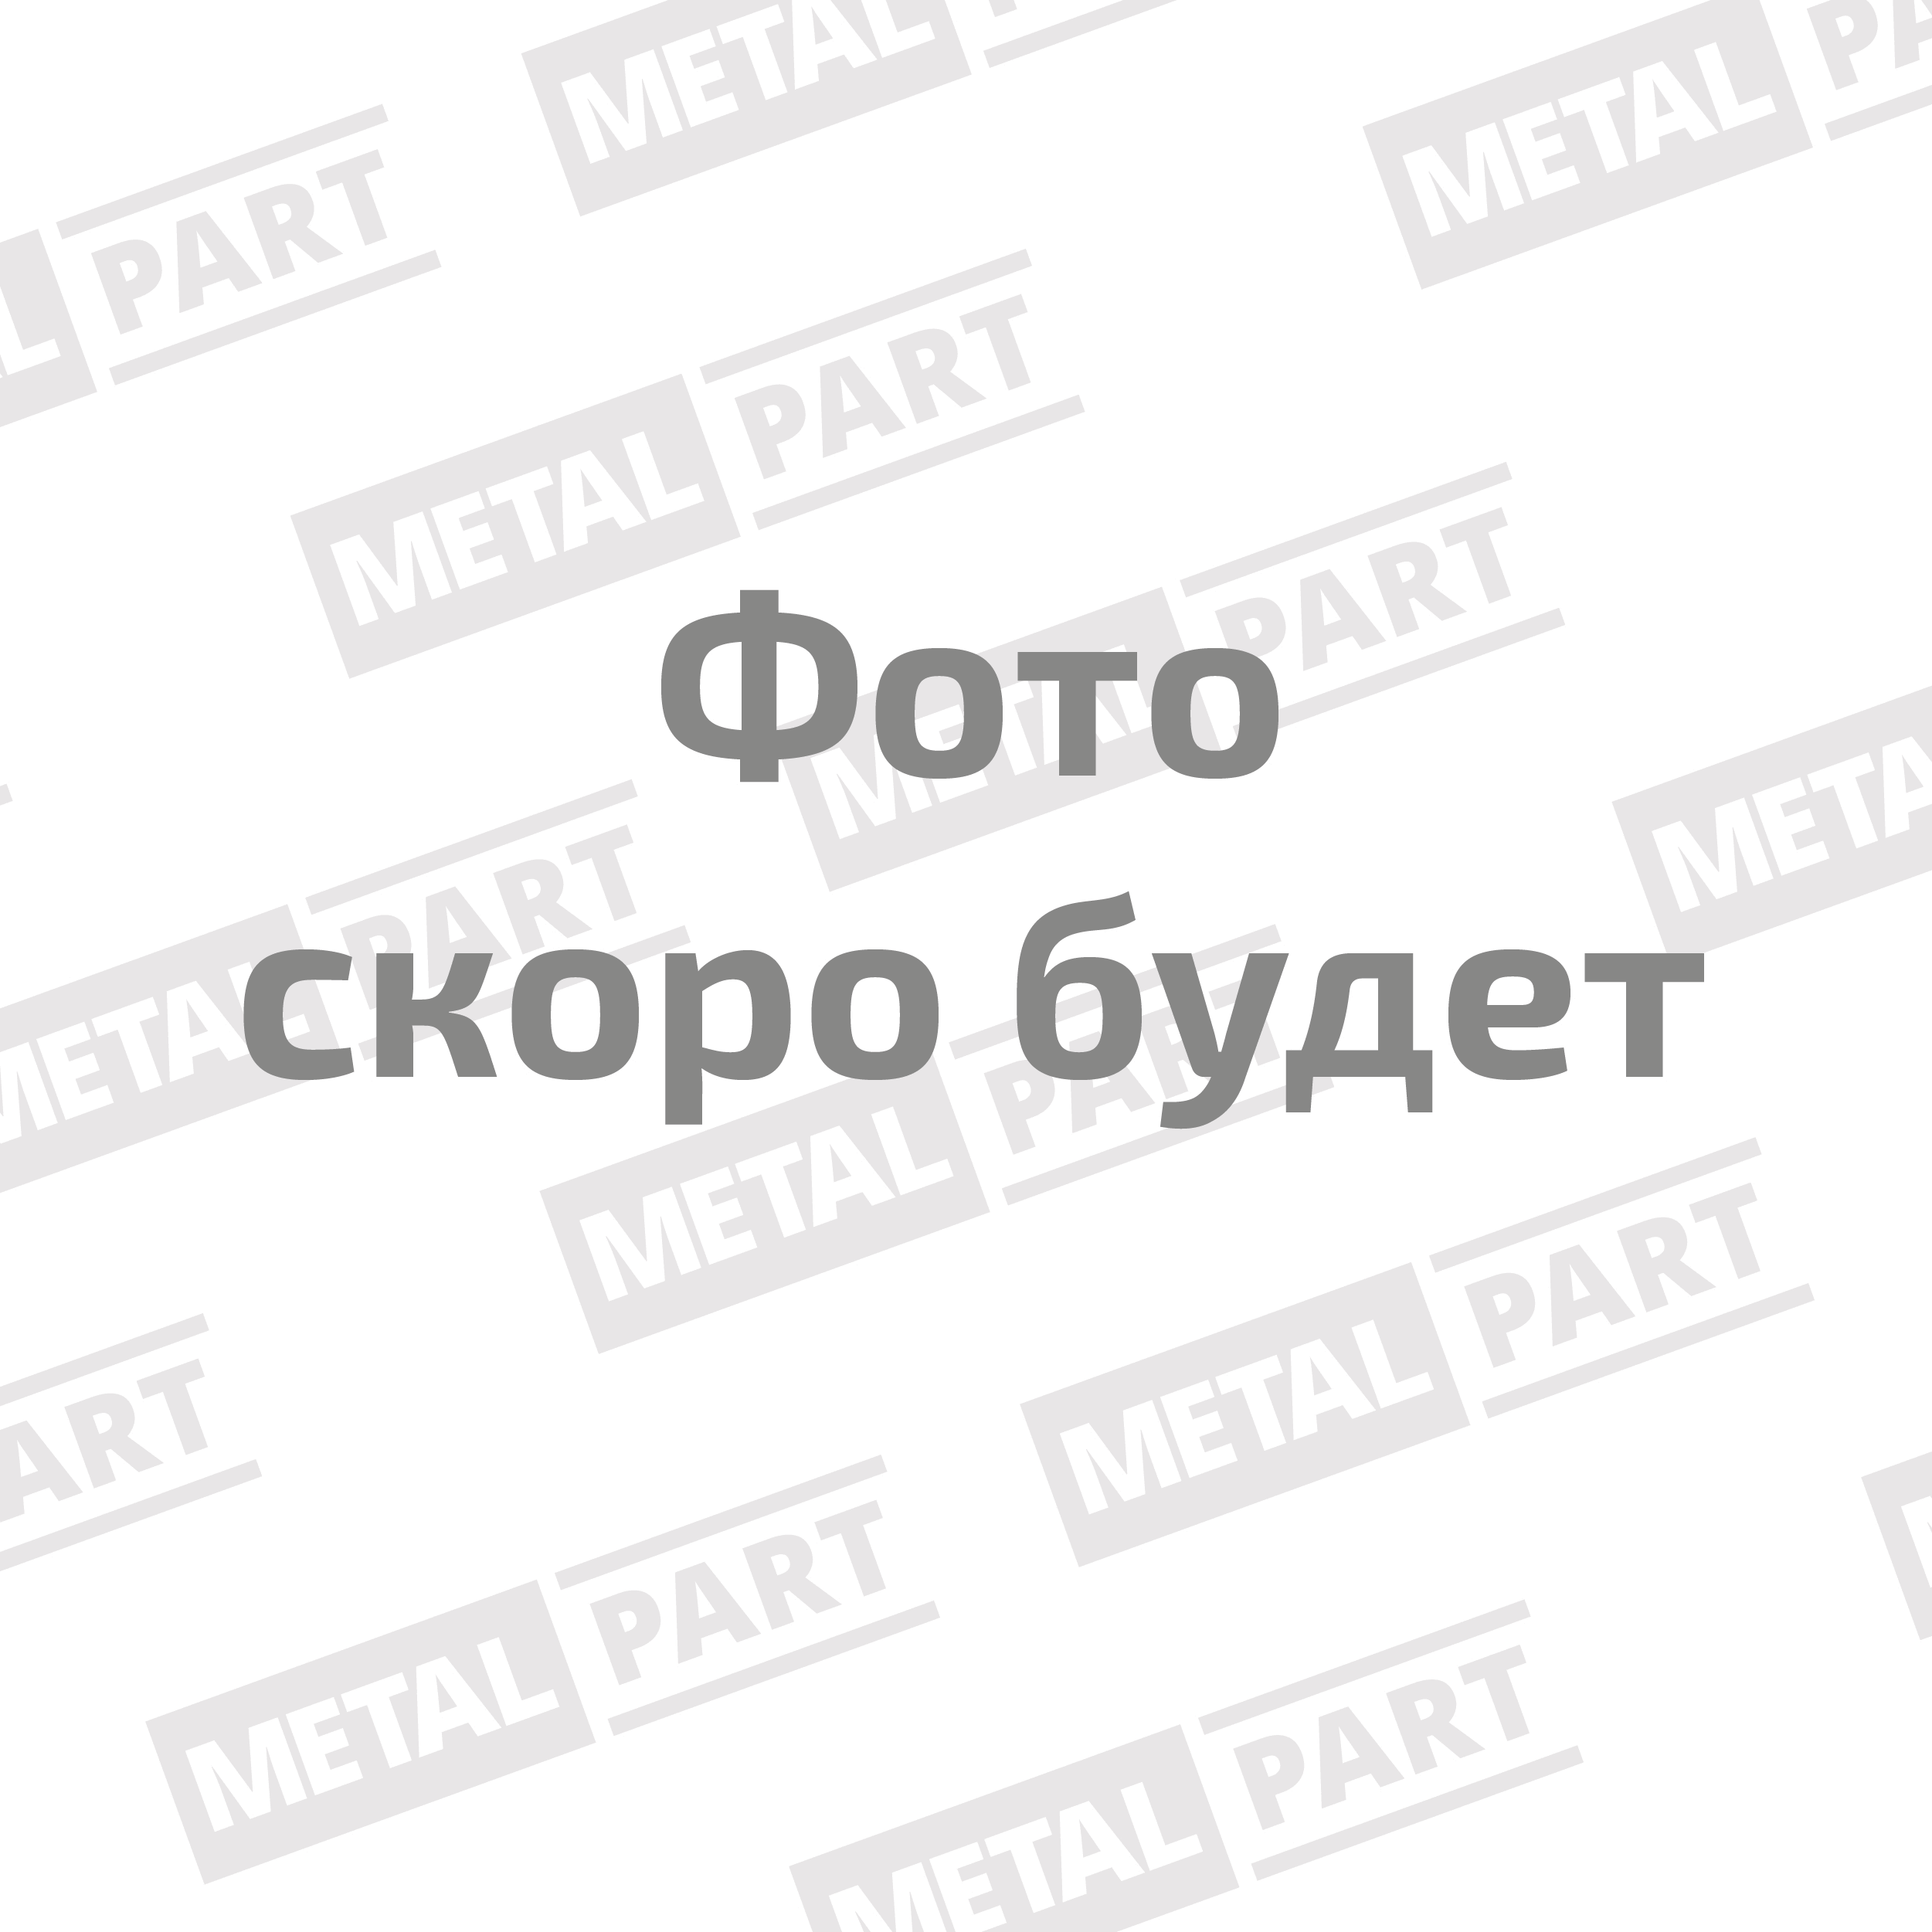 Вал карданный "MetalPart" заднего моста для автомобилей УАЗ 2206, 3303, 3909, 3741, 3962 Евро 4, гиб